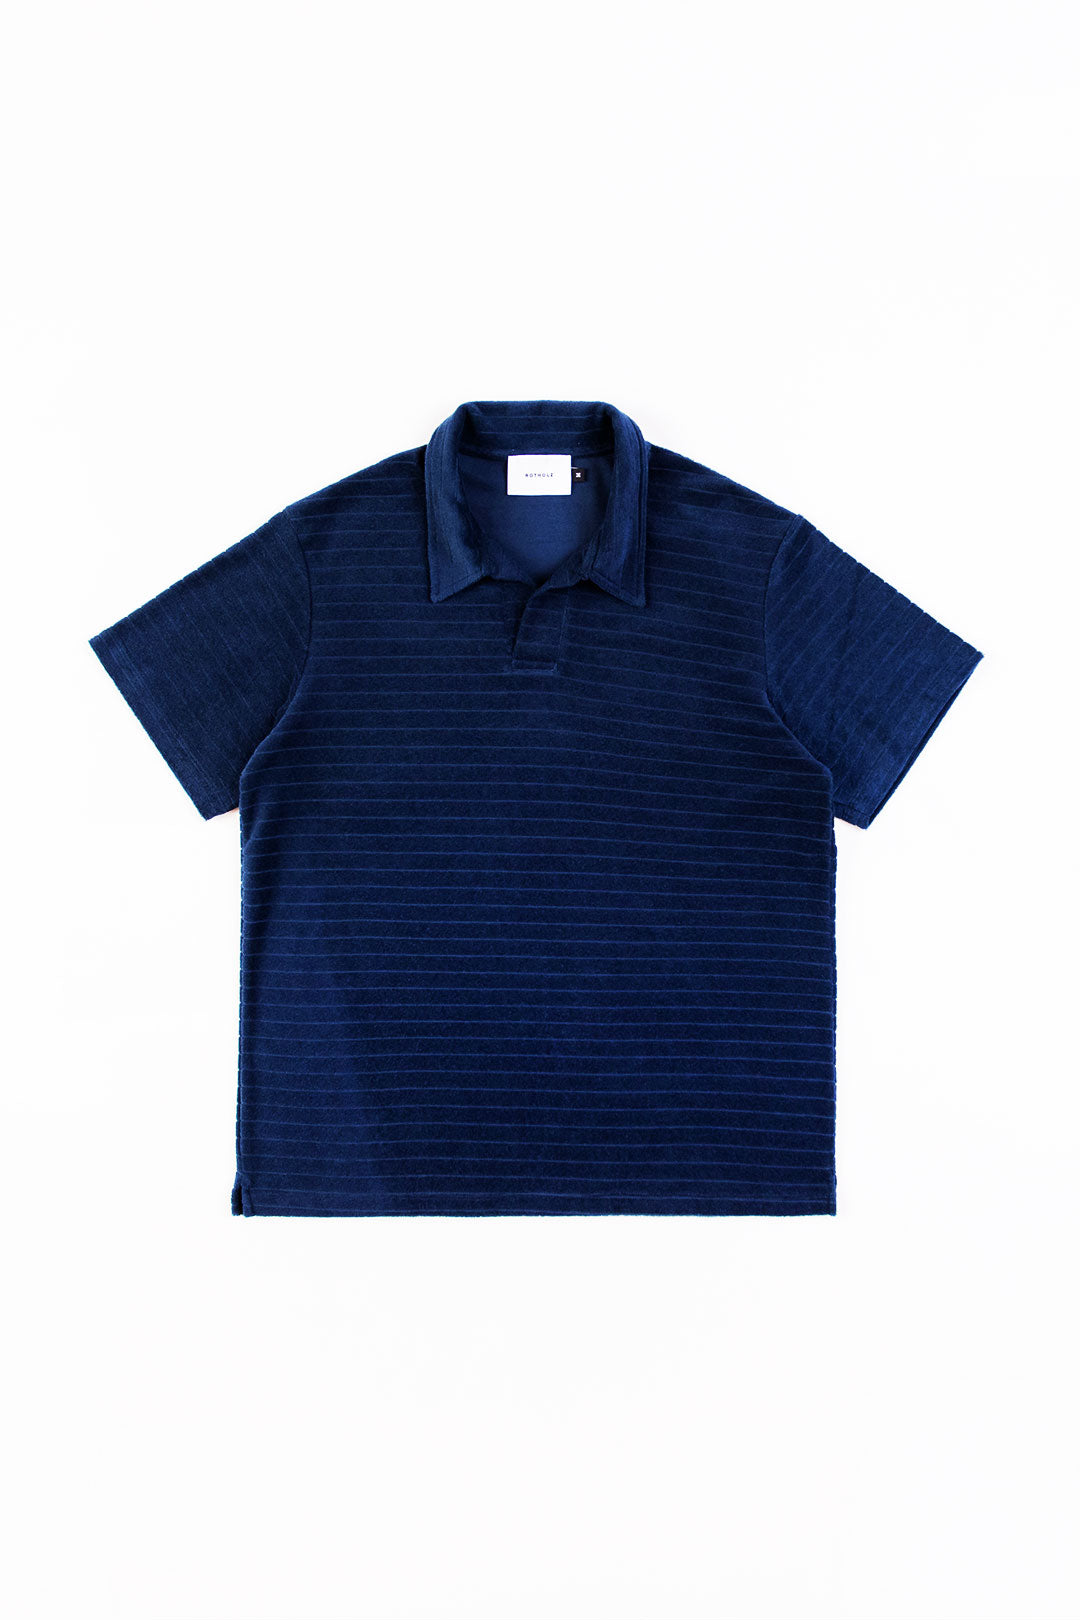 Blaues Poloshirt aus 100% Bio-Baumwolle von Rotholz